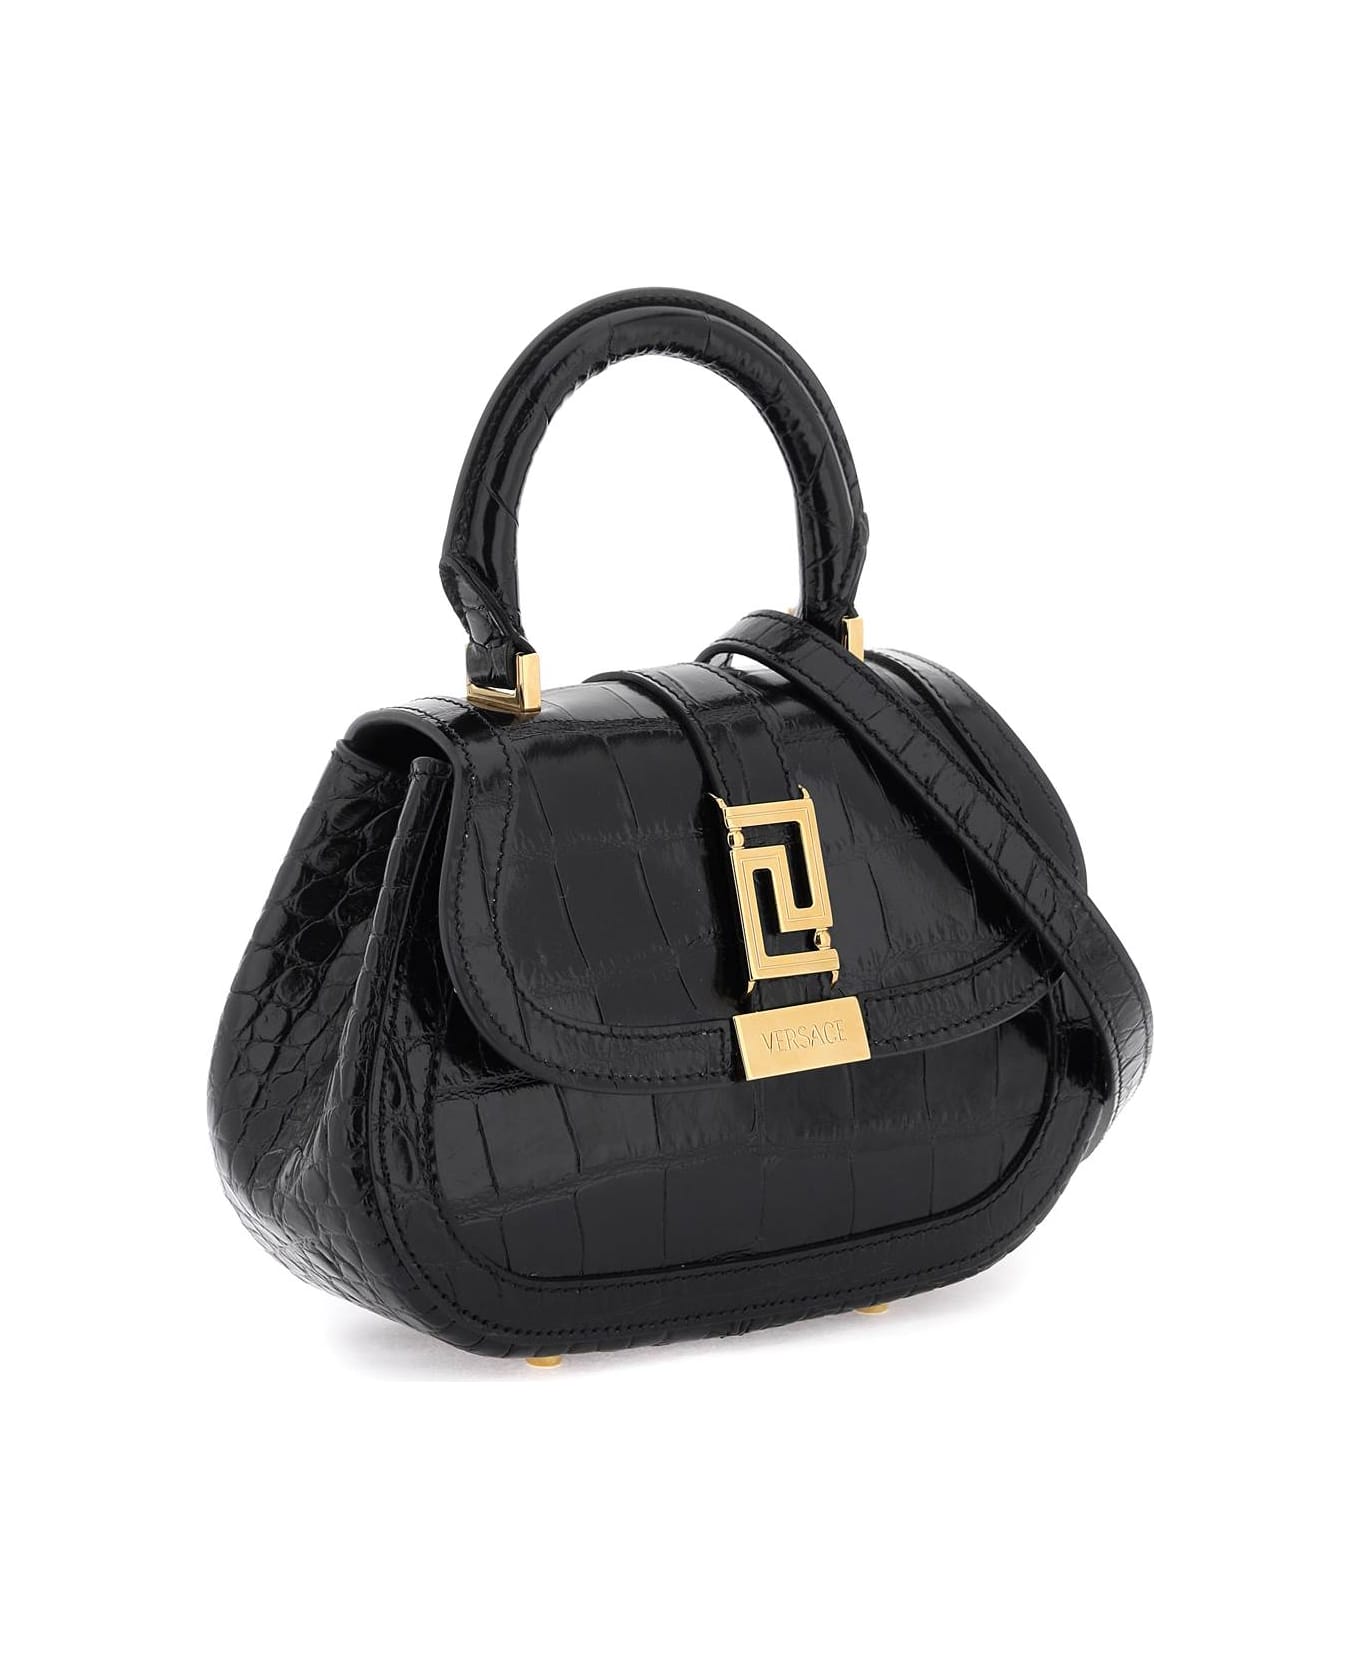 Versace Embossed Leather Mini Bag - Black